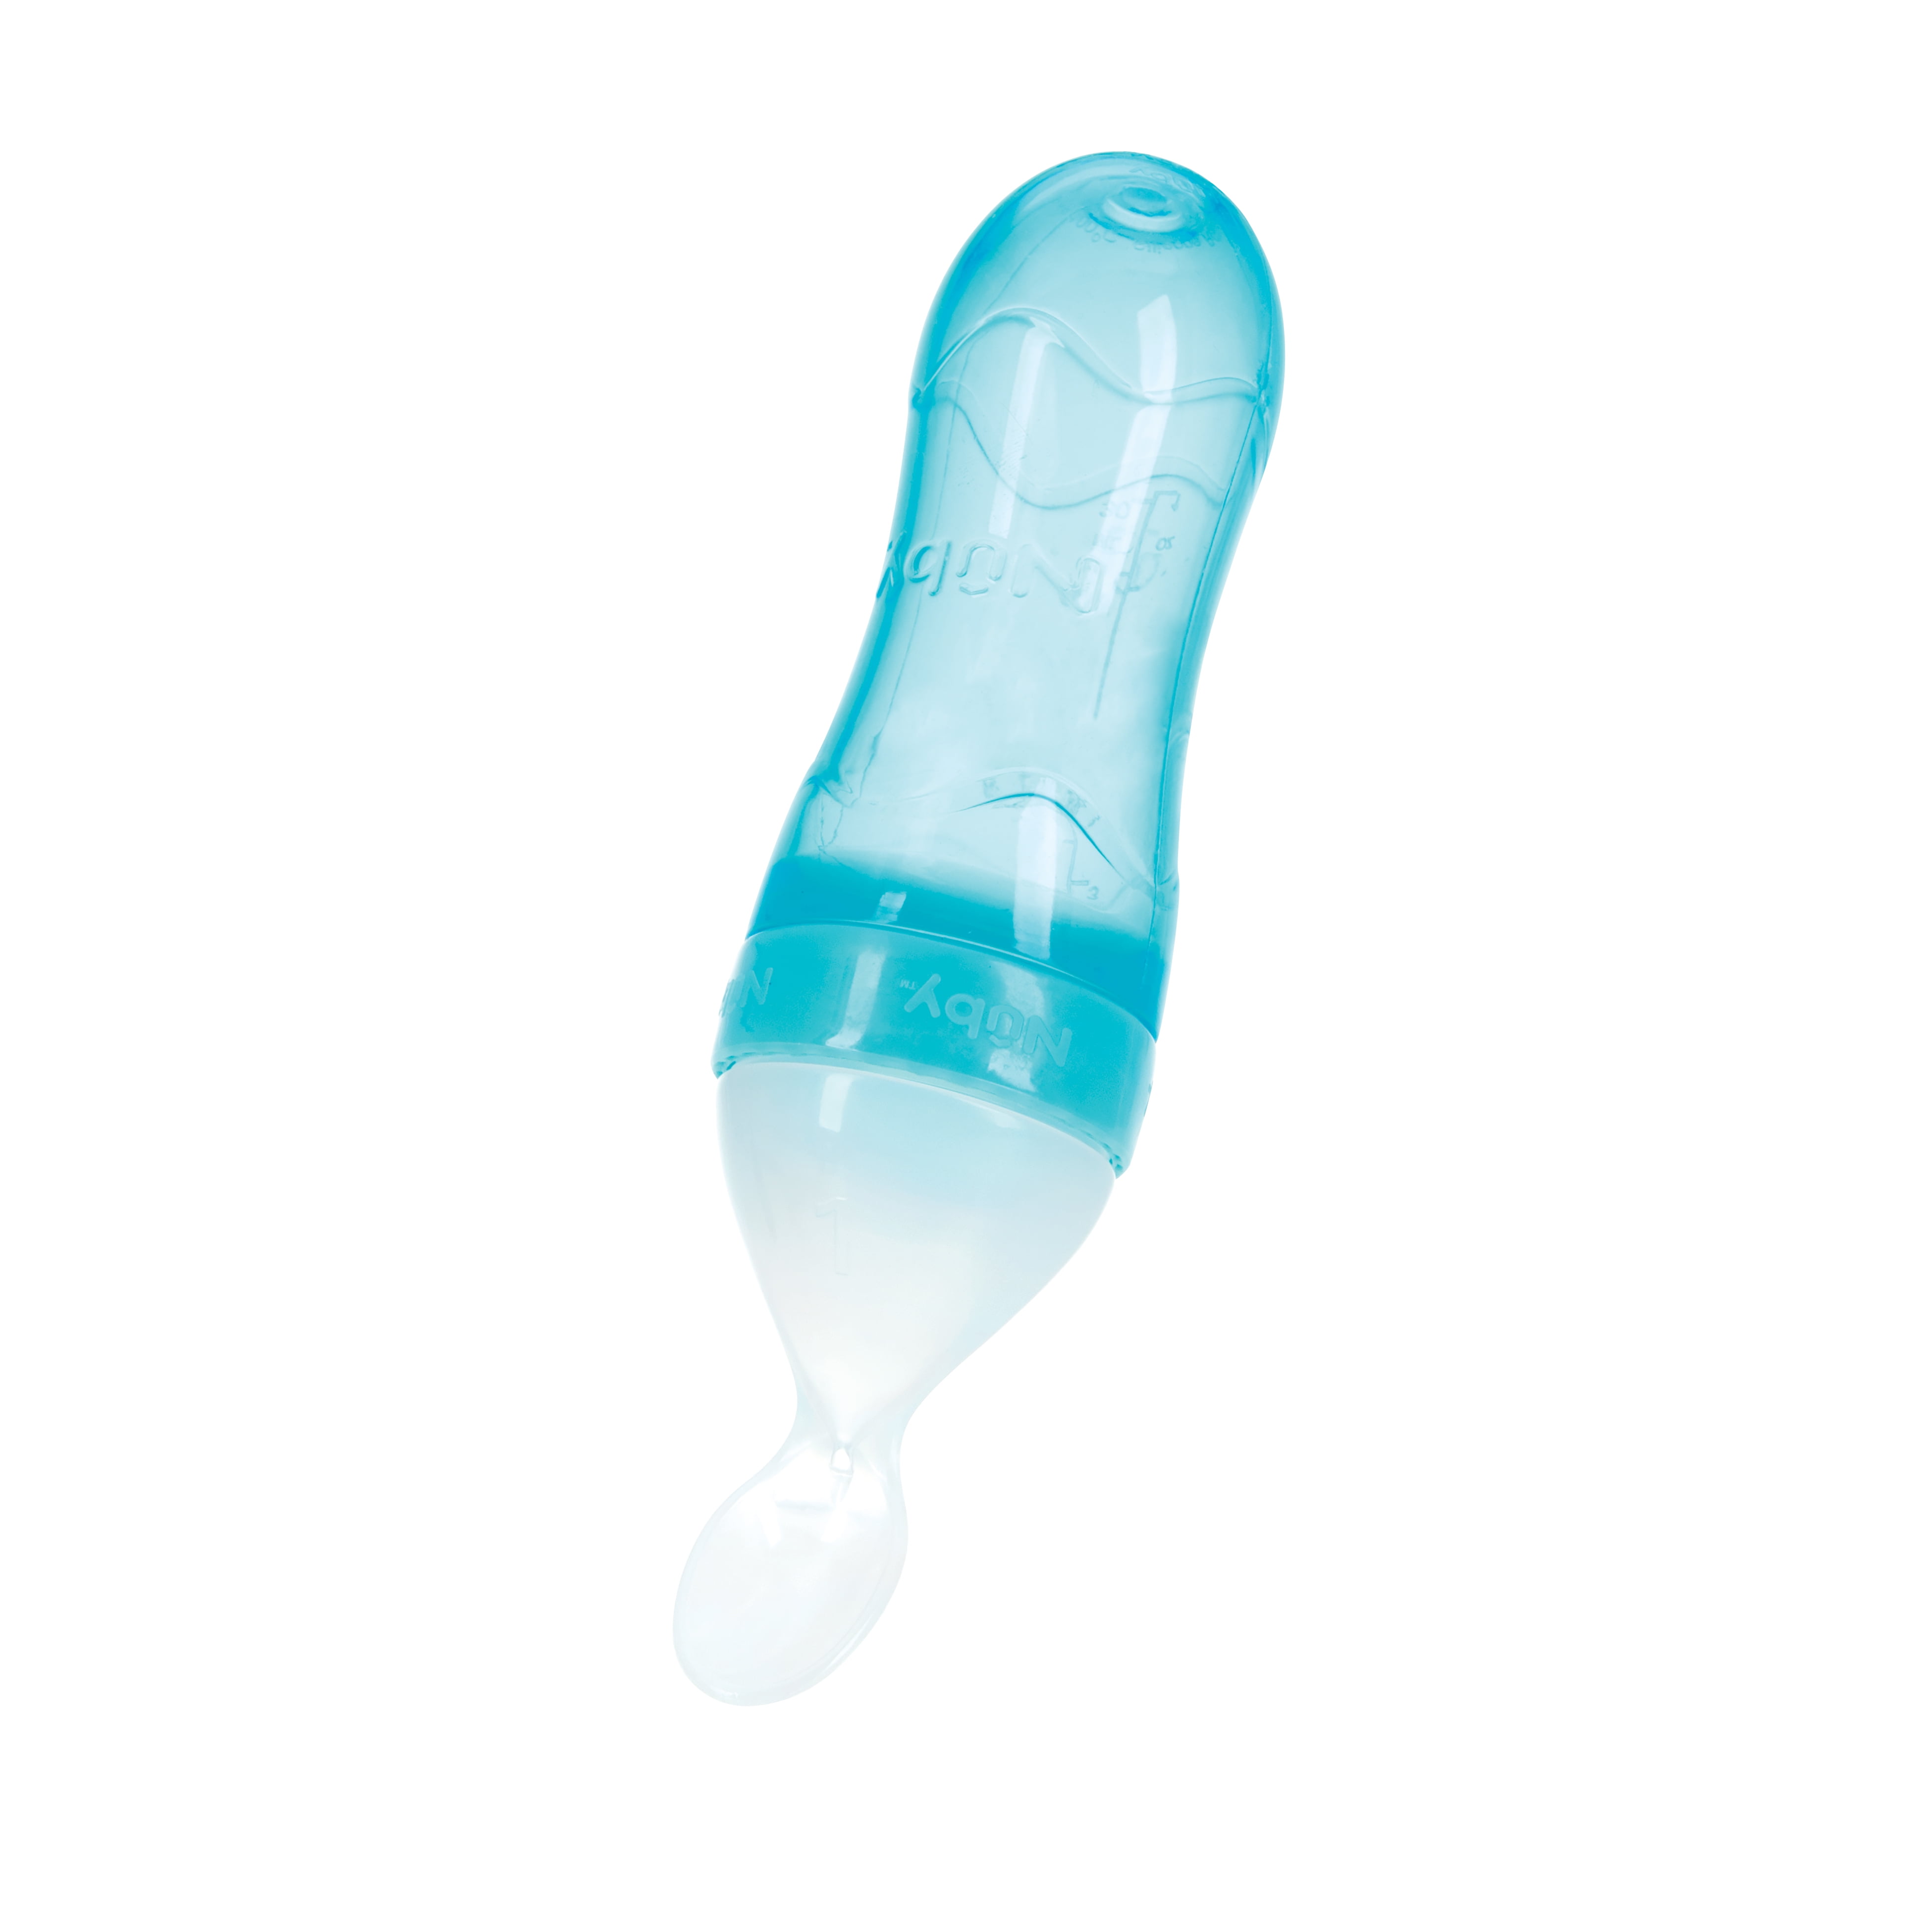 Squeezy Silicone Anti-Colic Bottle - 8 oz, Aqua